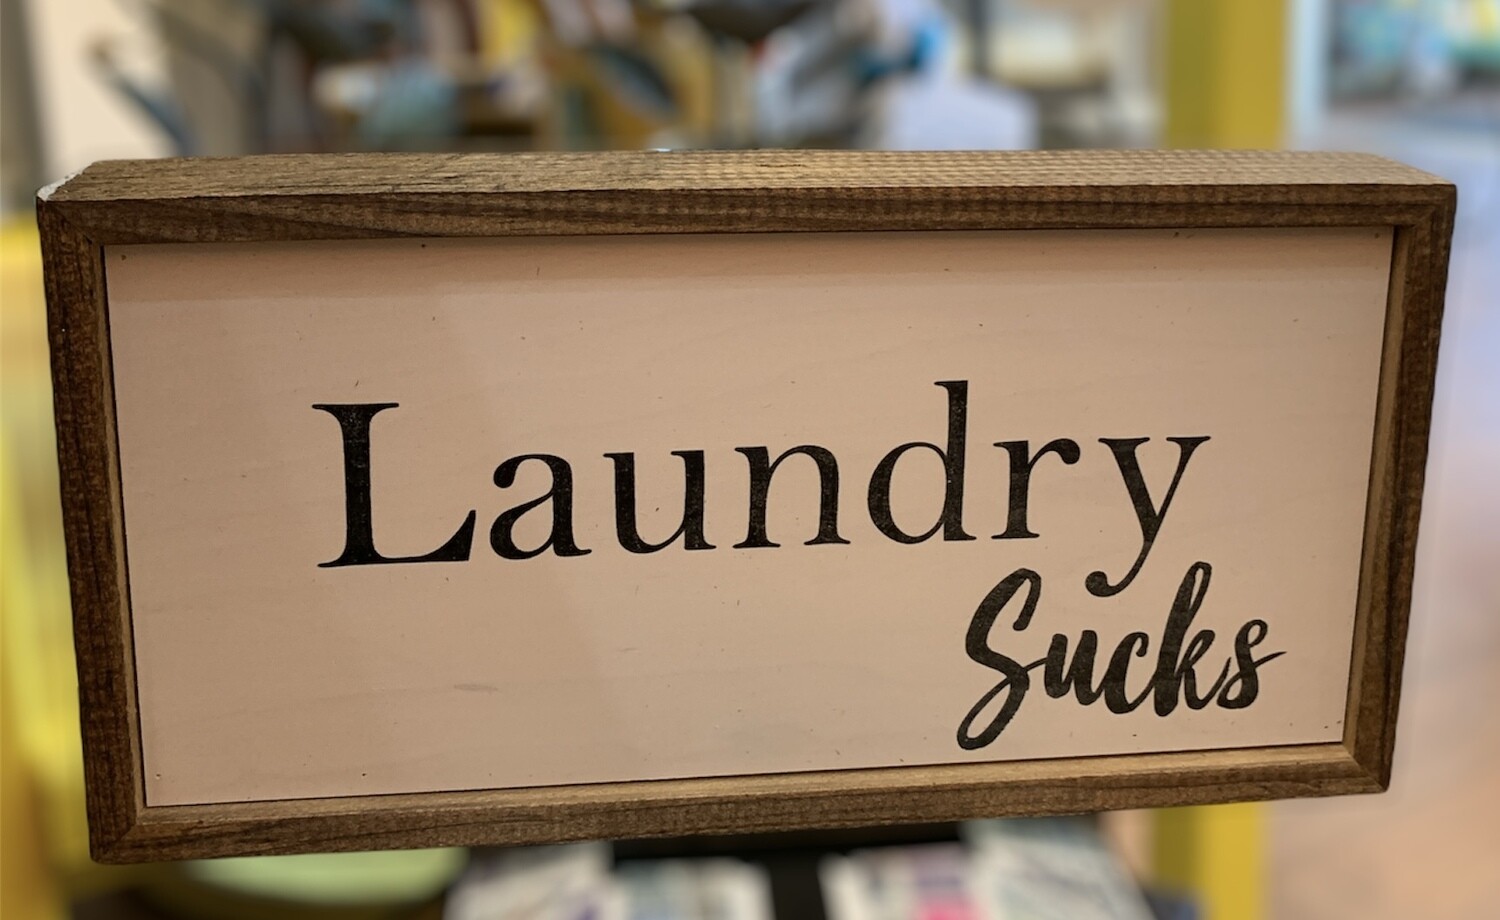 Laundry Sucks Framed Sign 12" x 6"